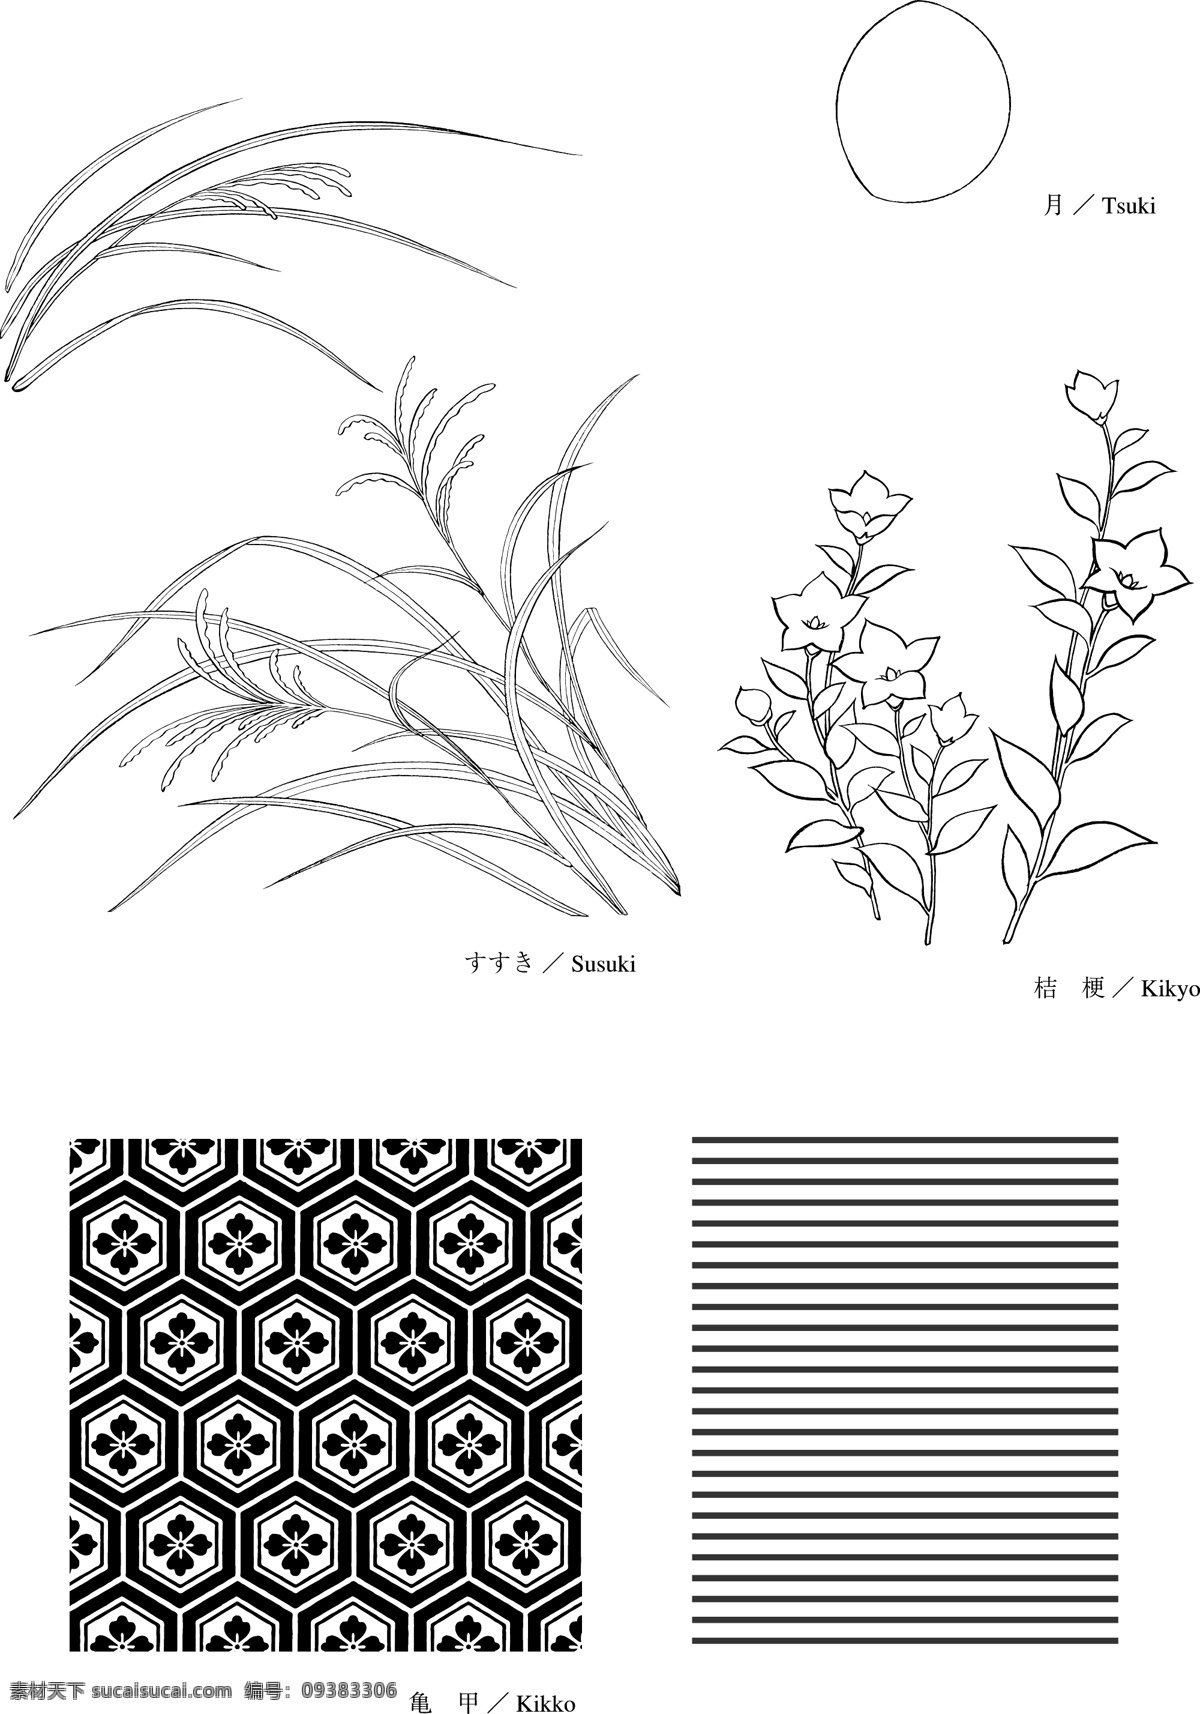 日本 线描 植物 花卉 矢量 其他矢量 矢量素材 矢量图库